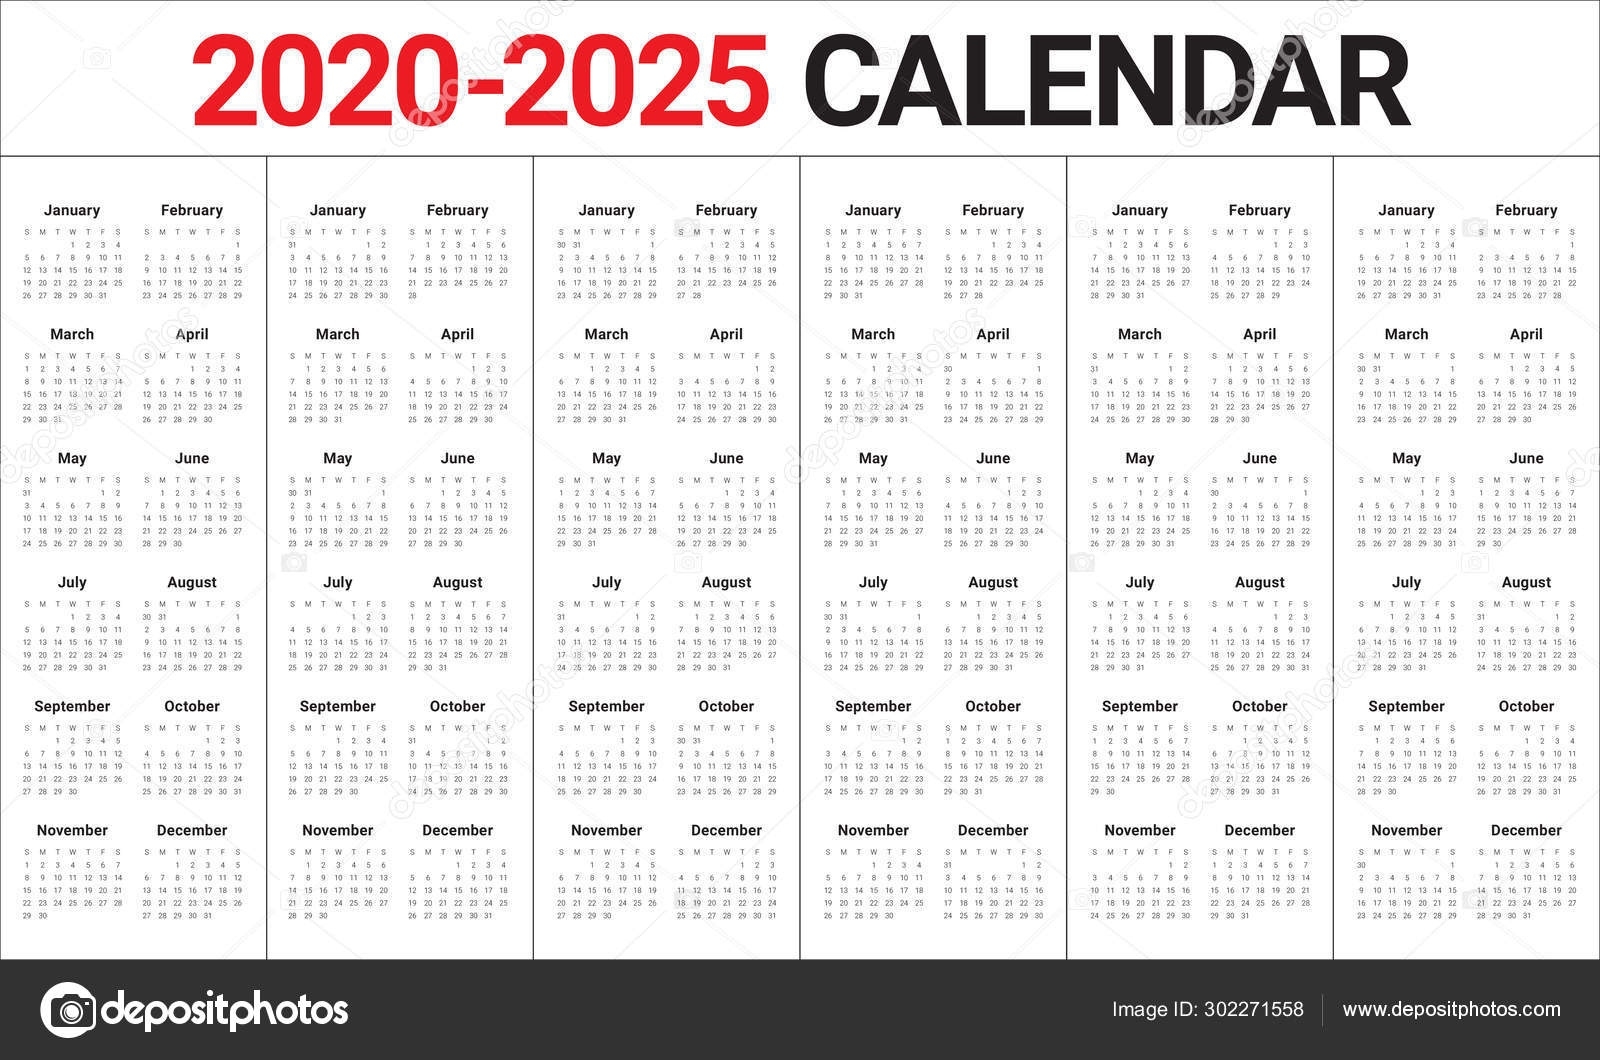 Year 2020 2021 2022 2023 2024 2025 Calendar Vector Design Calendar 2020 To 2025